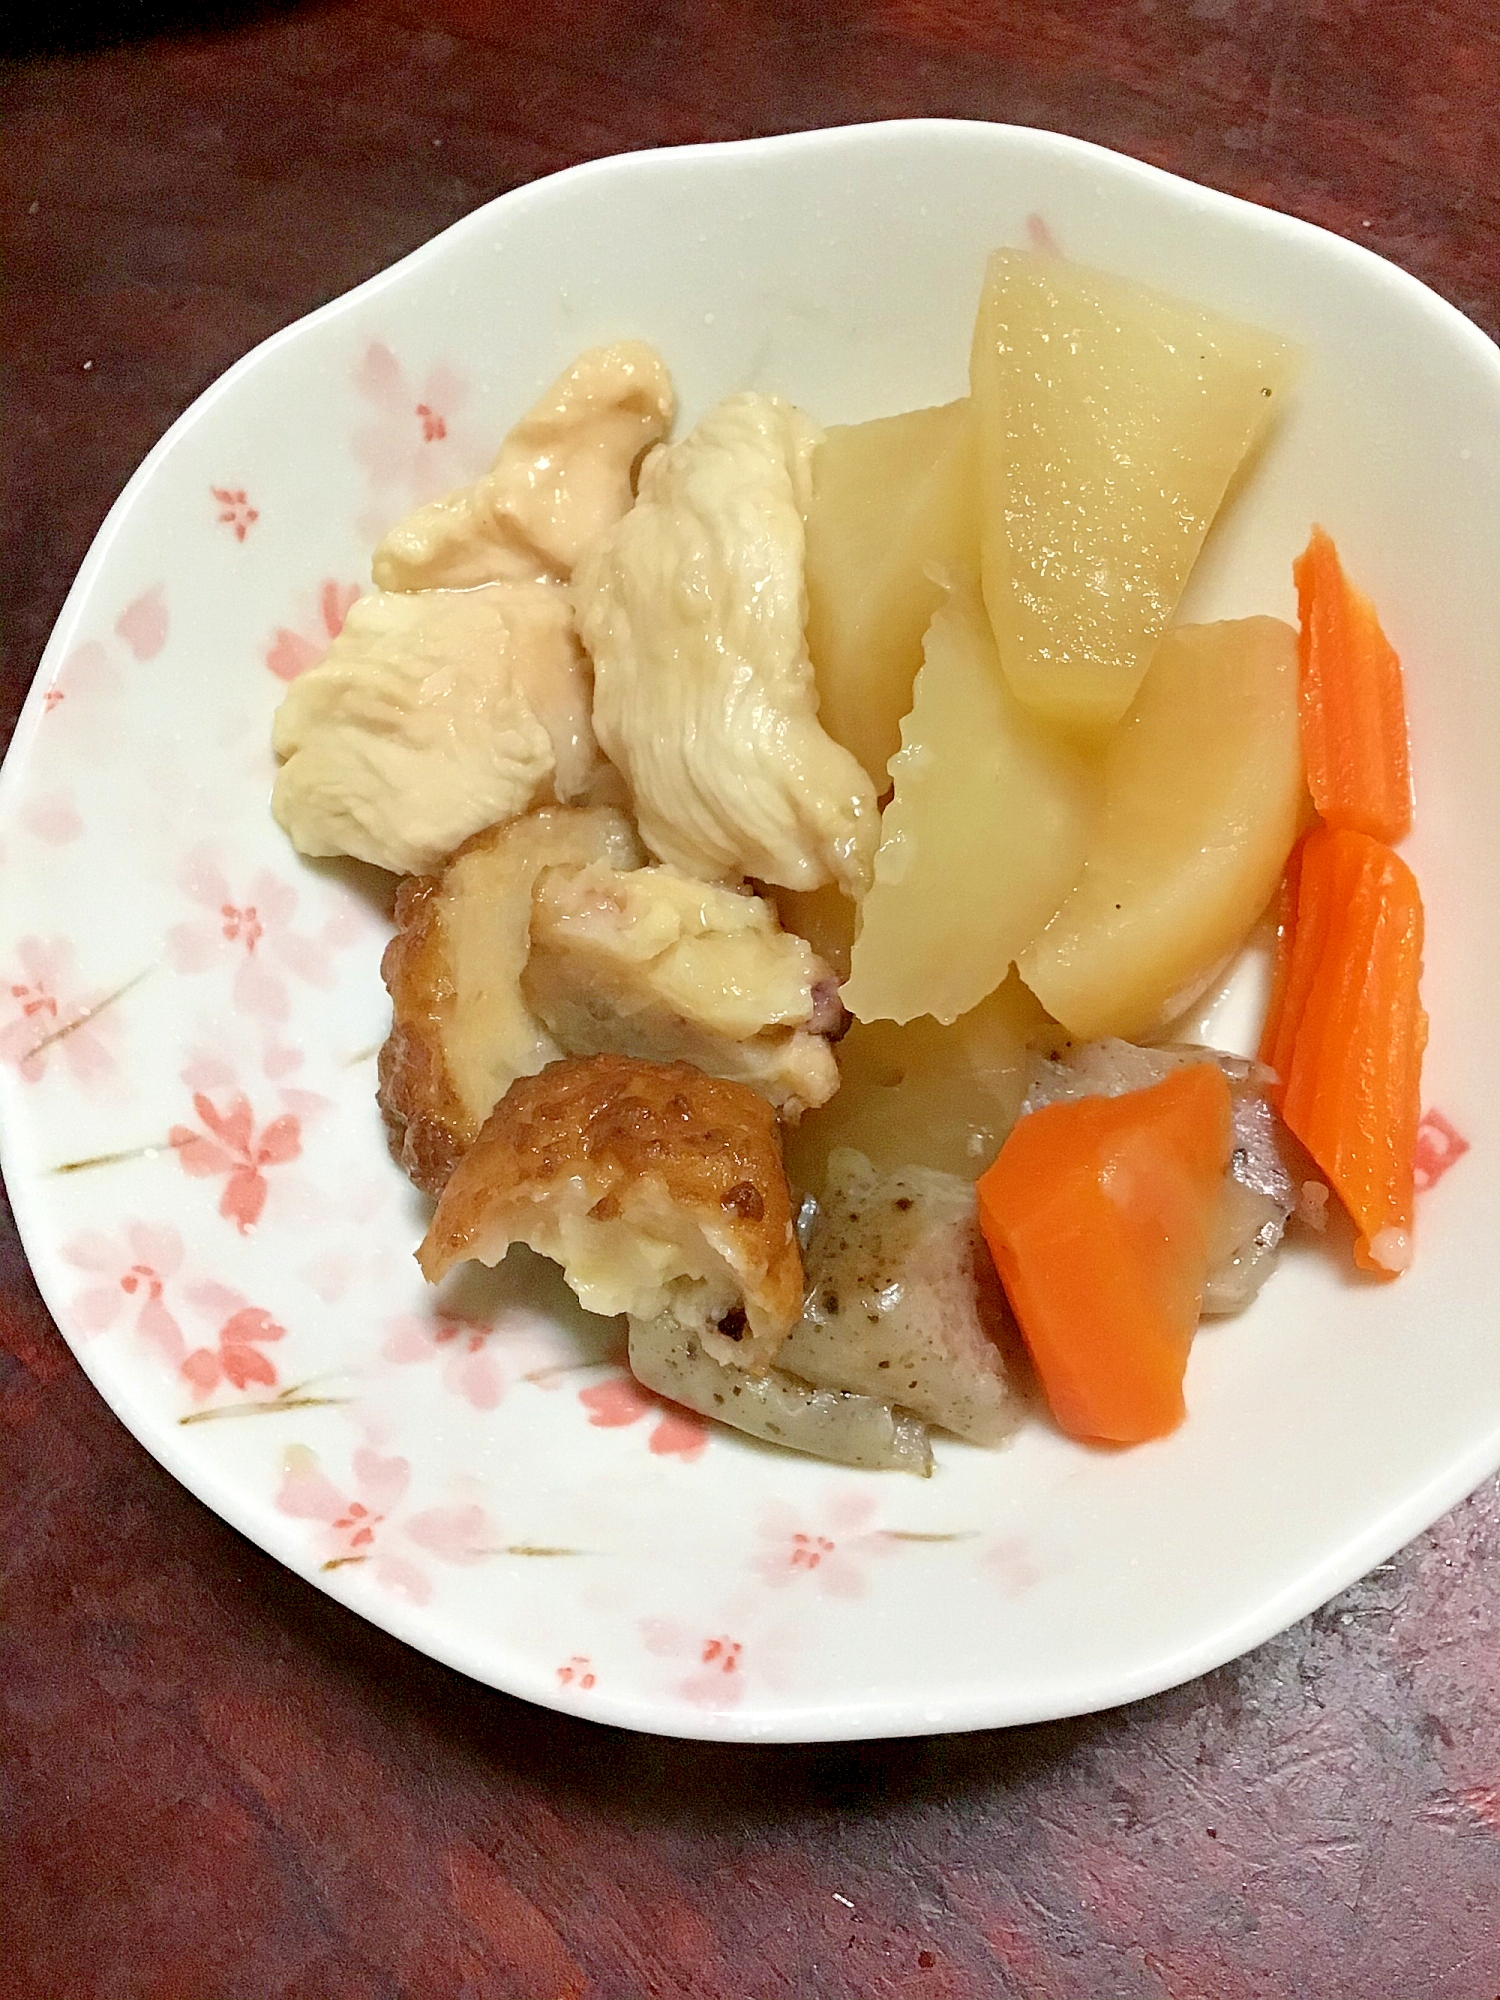 鶏胸と練り物と根菜の煮物。